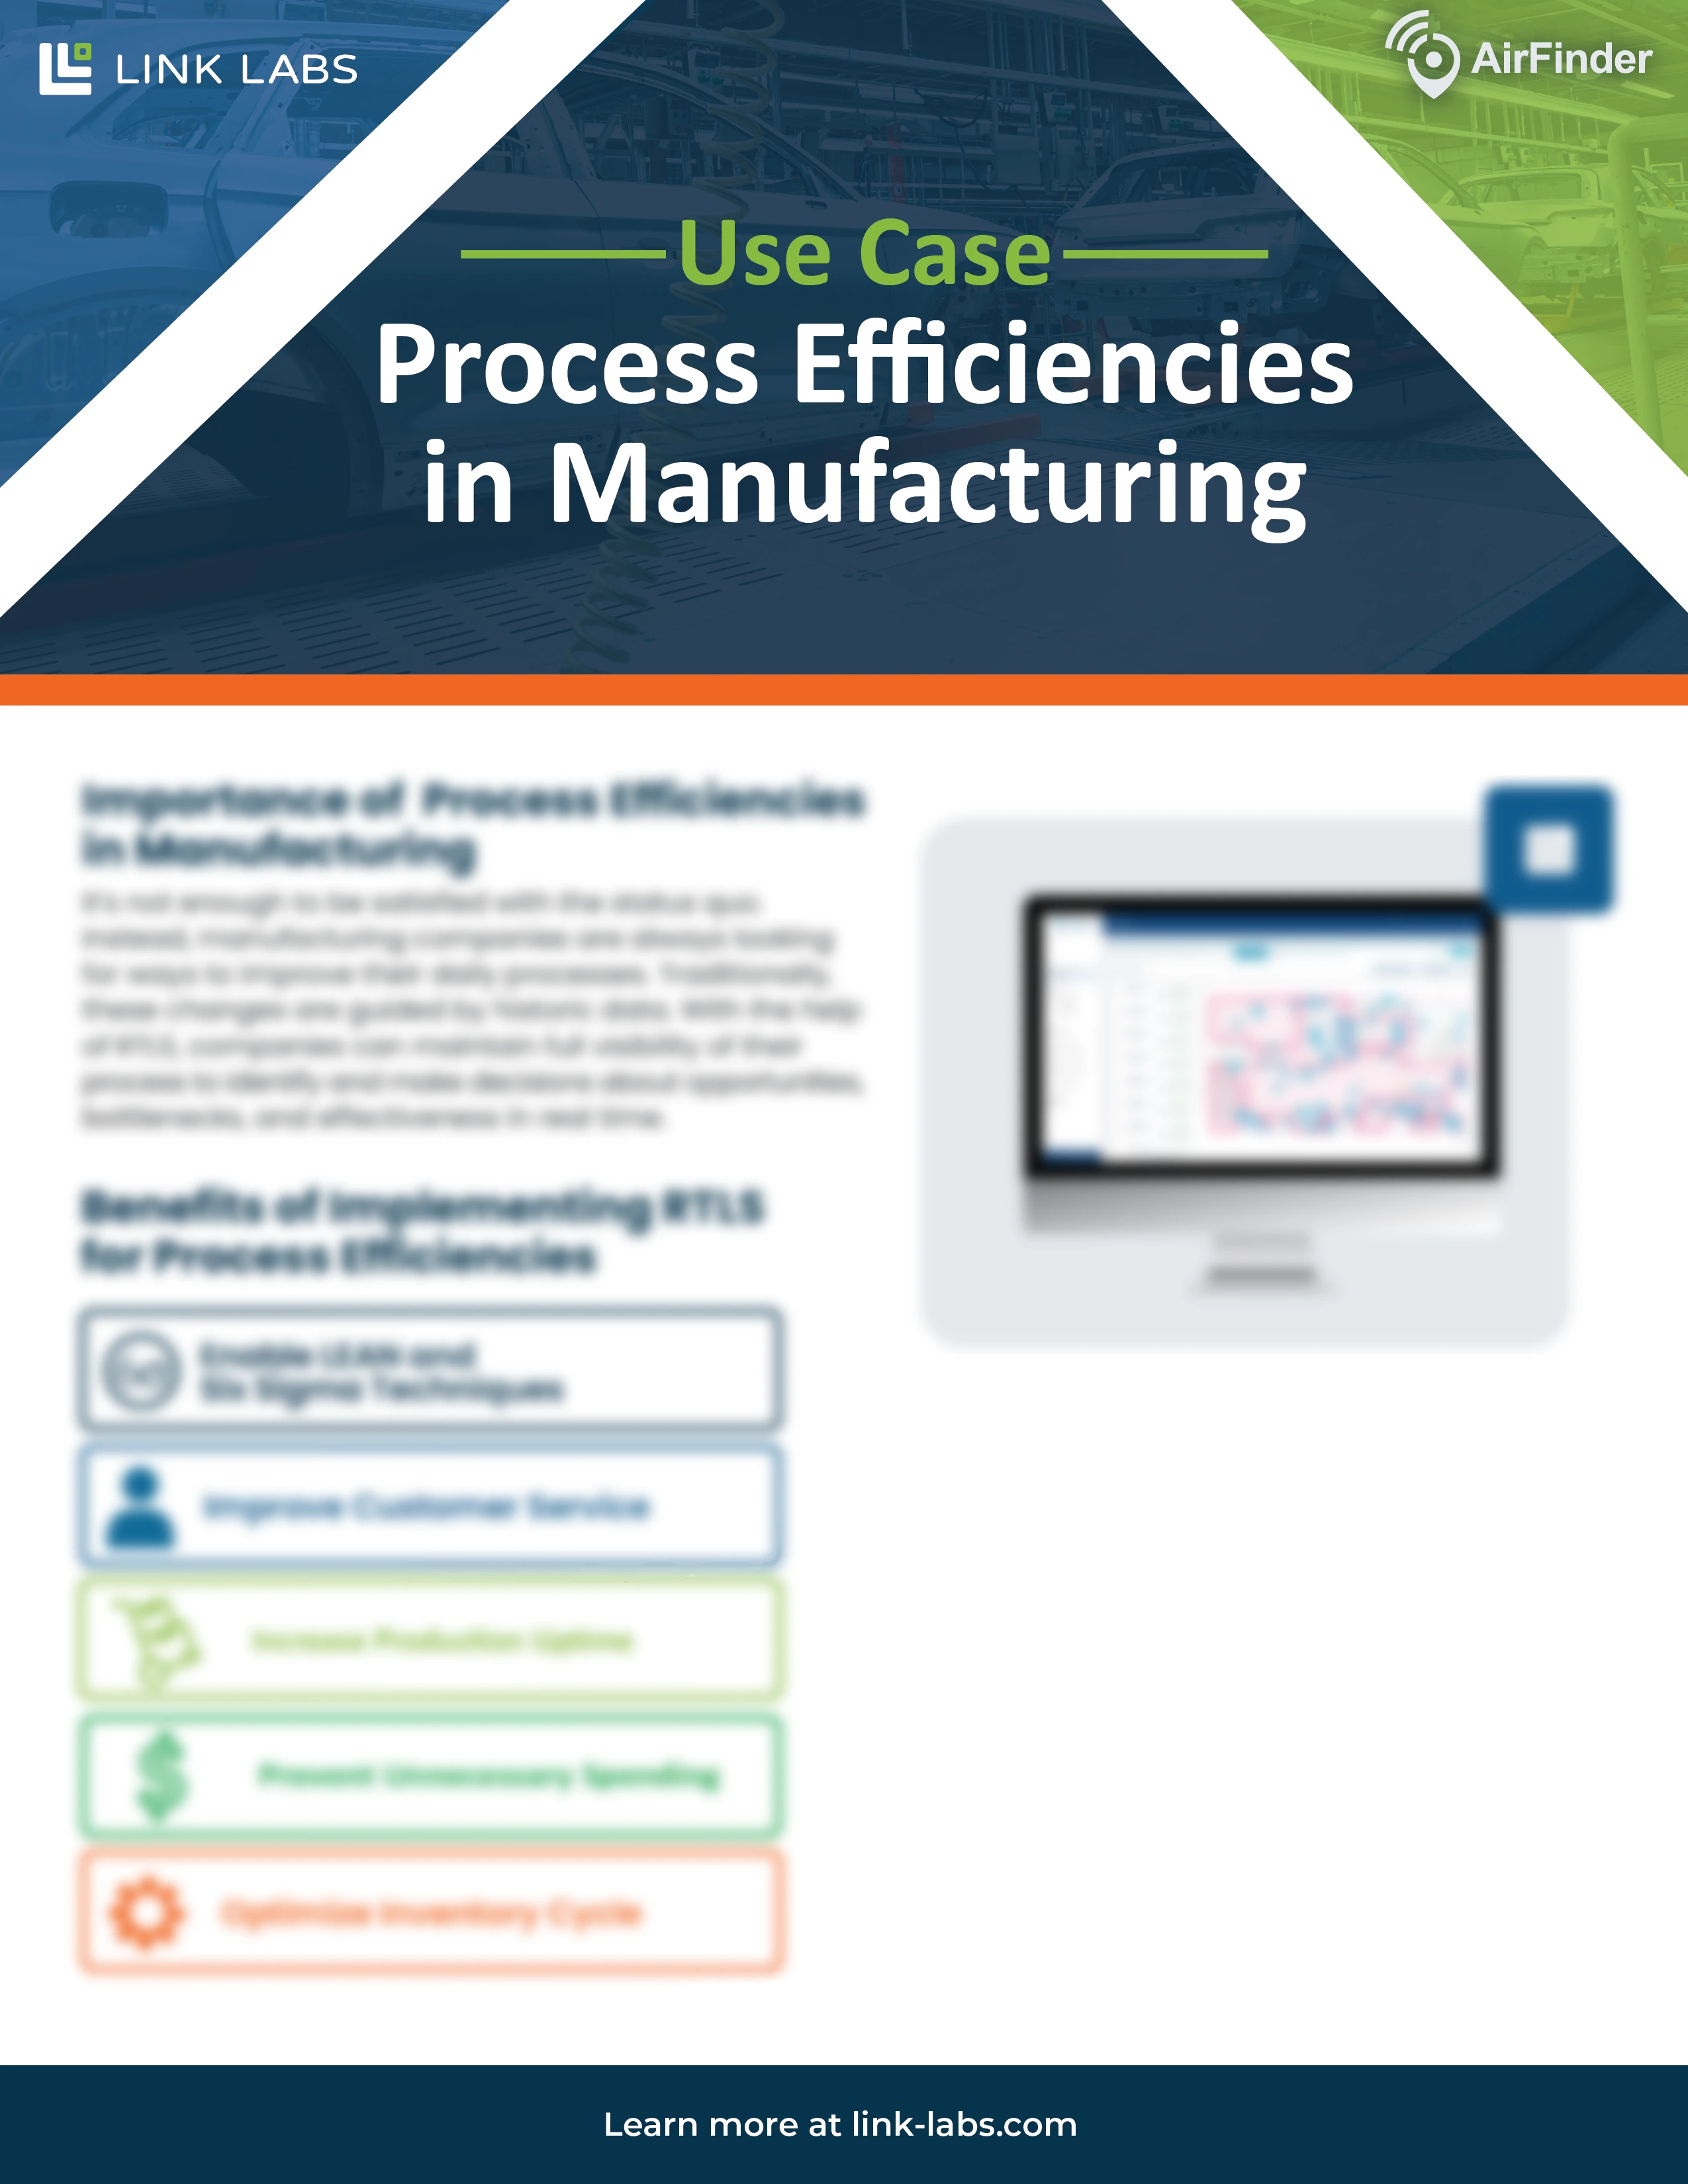 Process Efficiencies